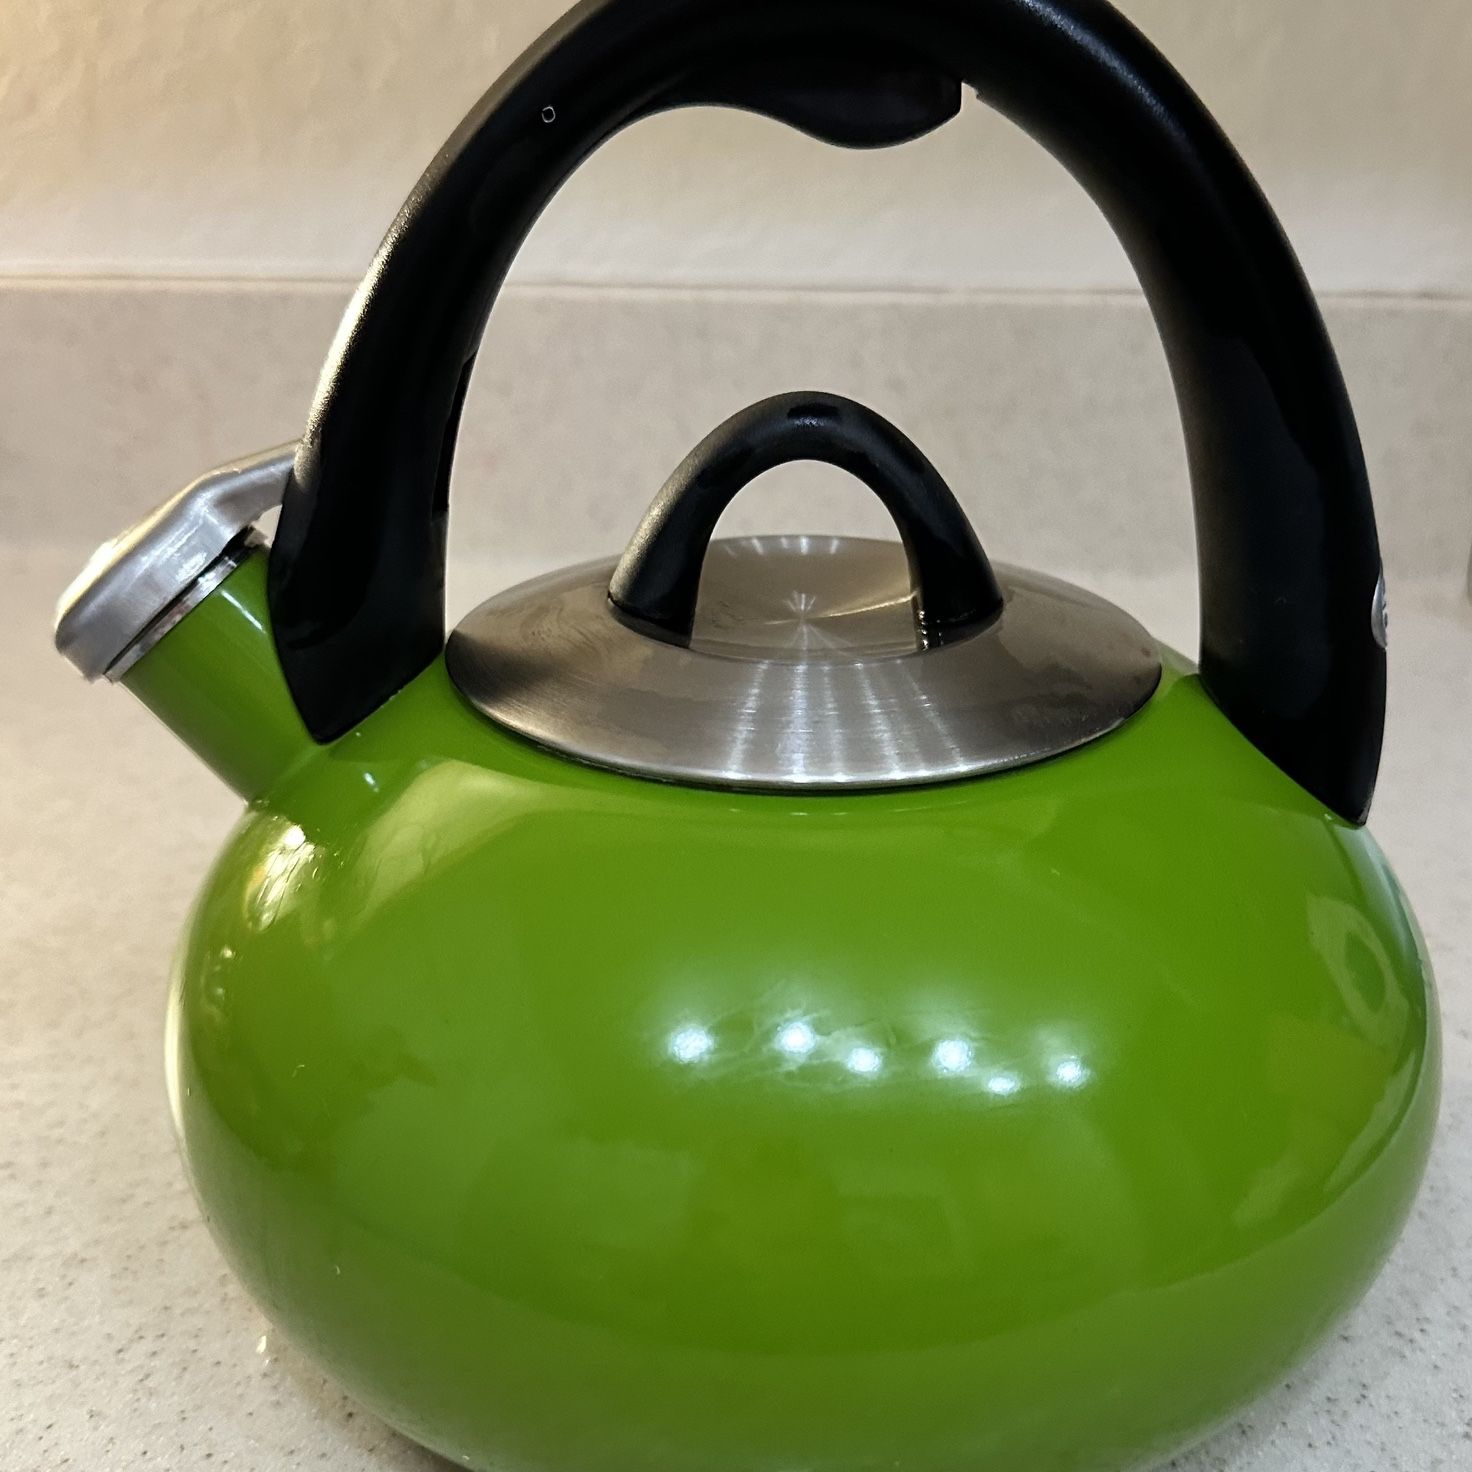 Calphalon Stainless Steel 2 Quart 1.9 Liter Whistling Tea Kettle #4402 in Green